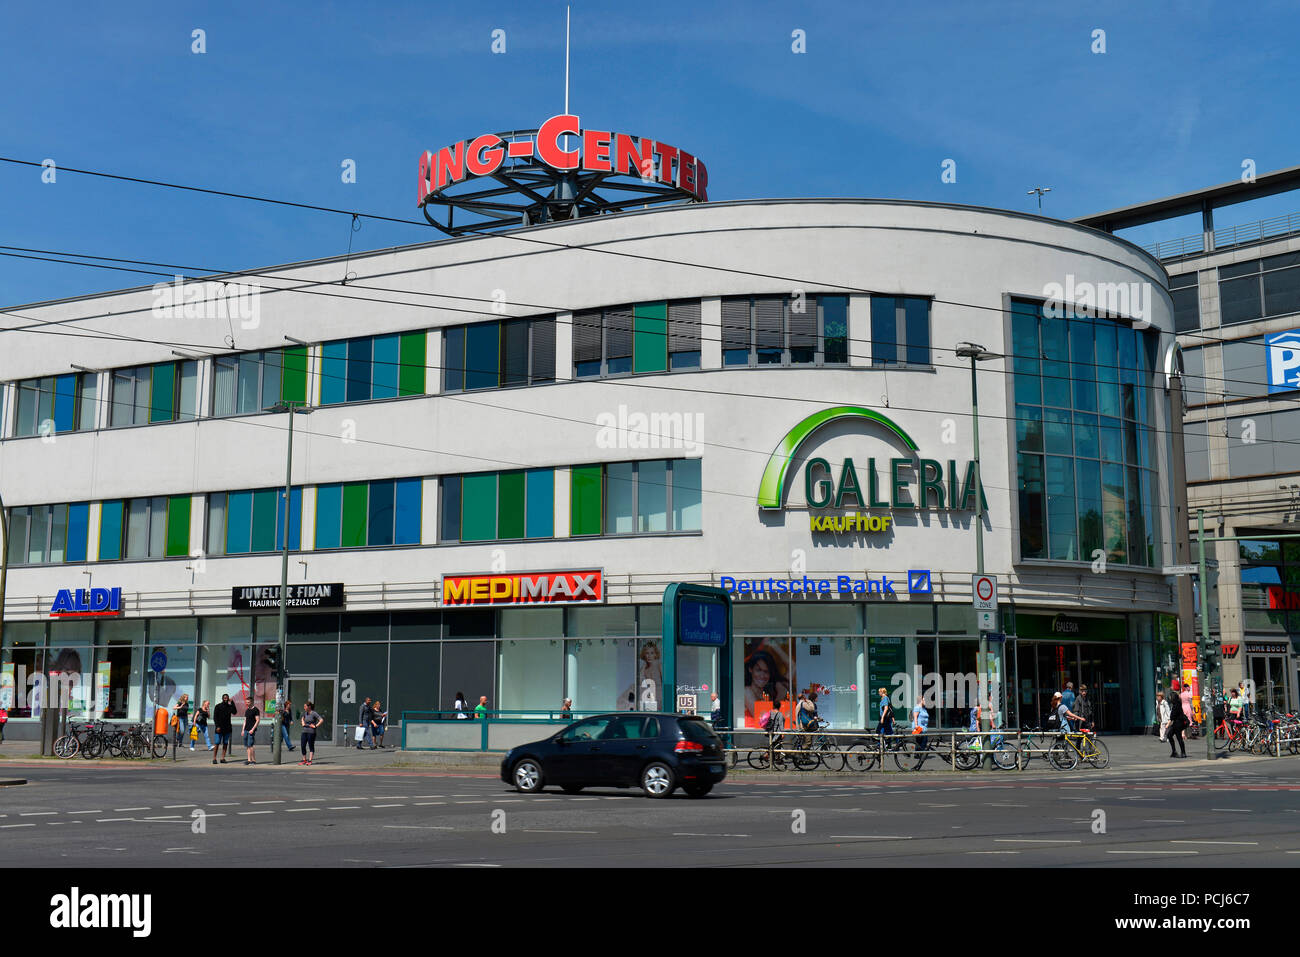 Ring-Center, Frankfurter Allee, Lichtenberg, Berlin, Deutschland  Stockfotografie - Alamy